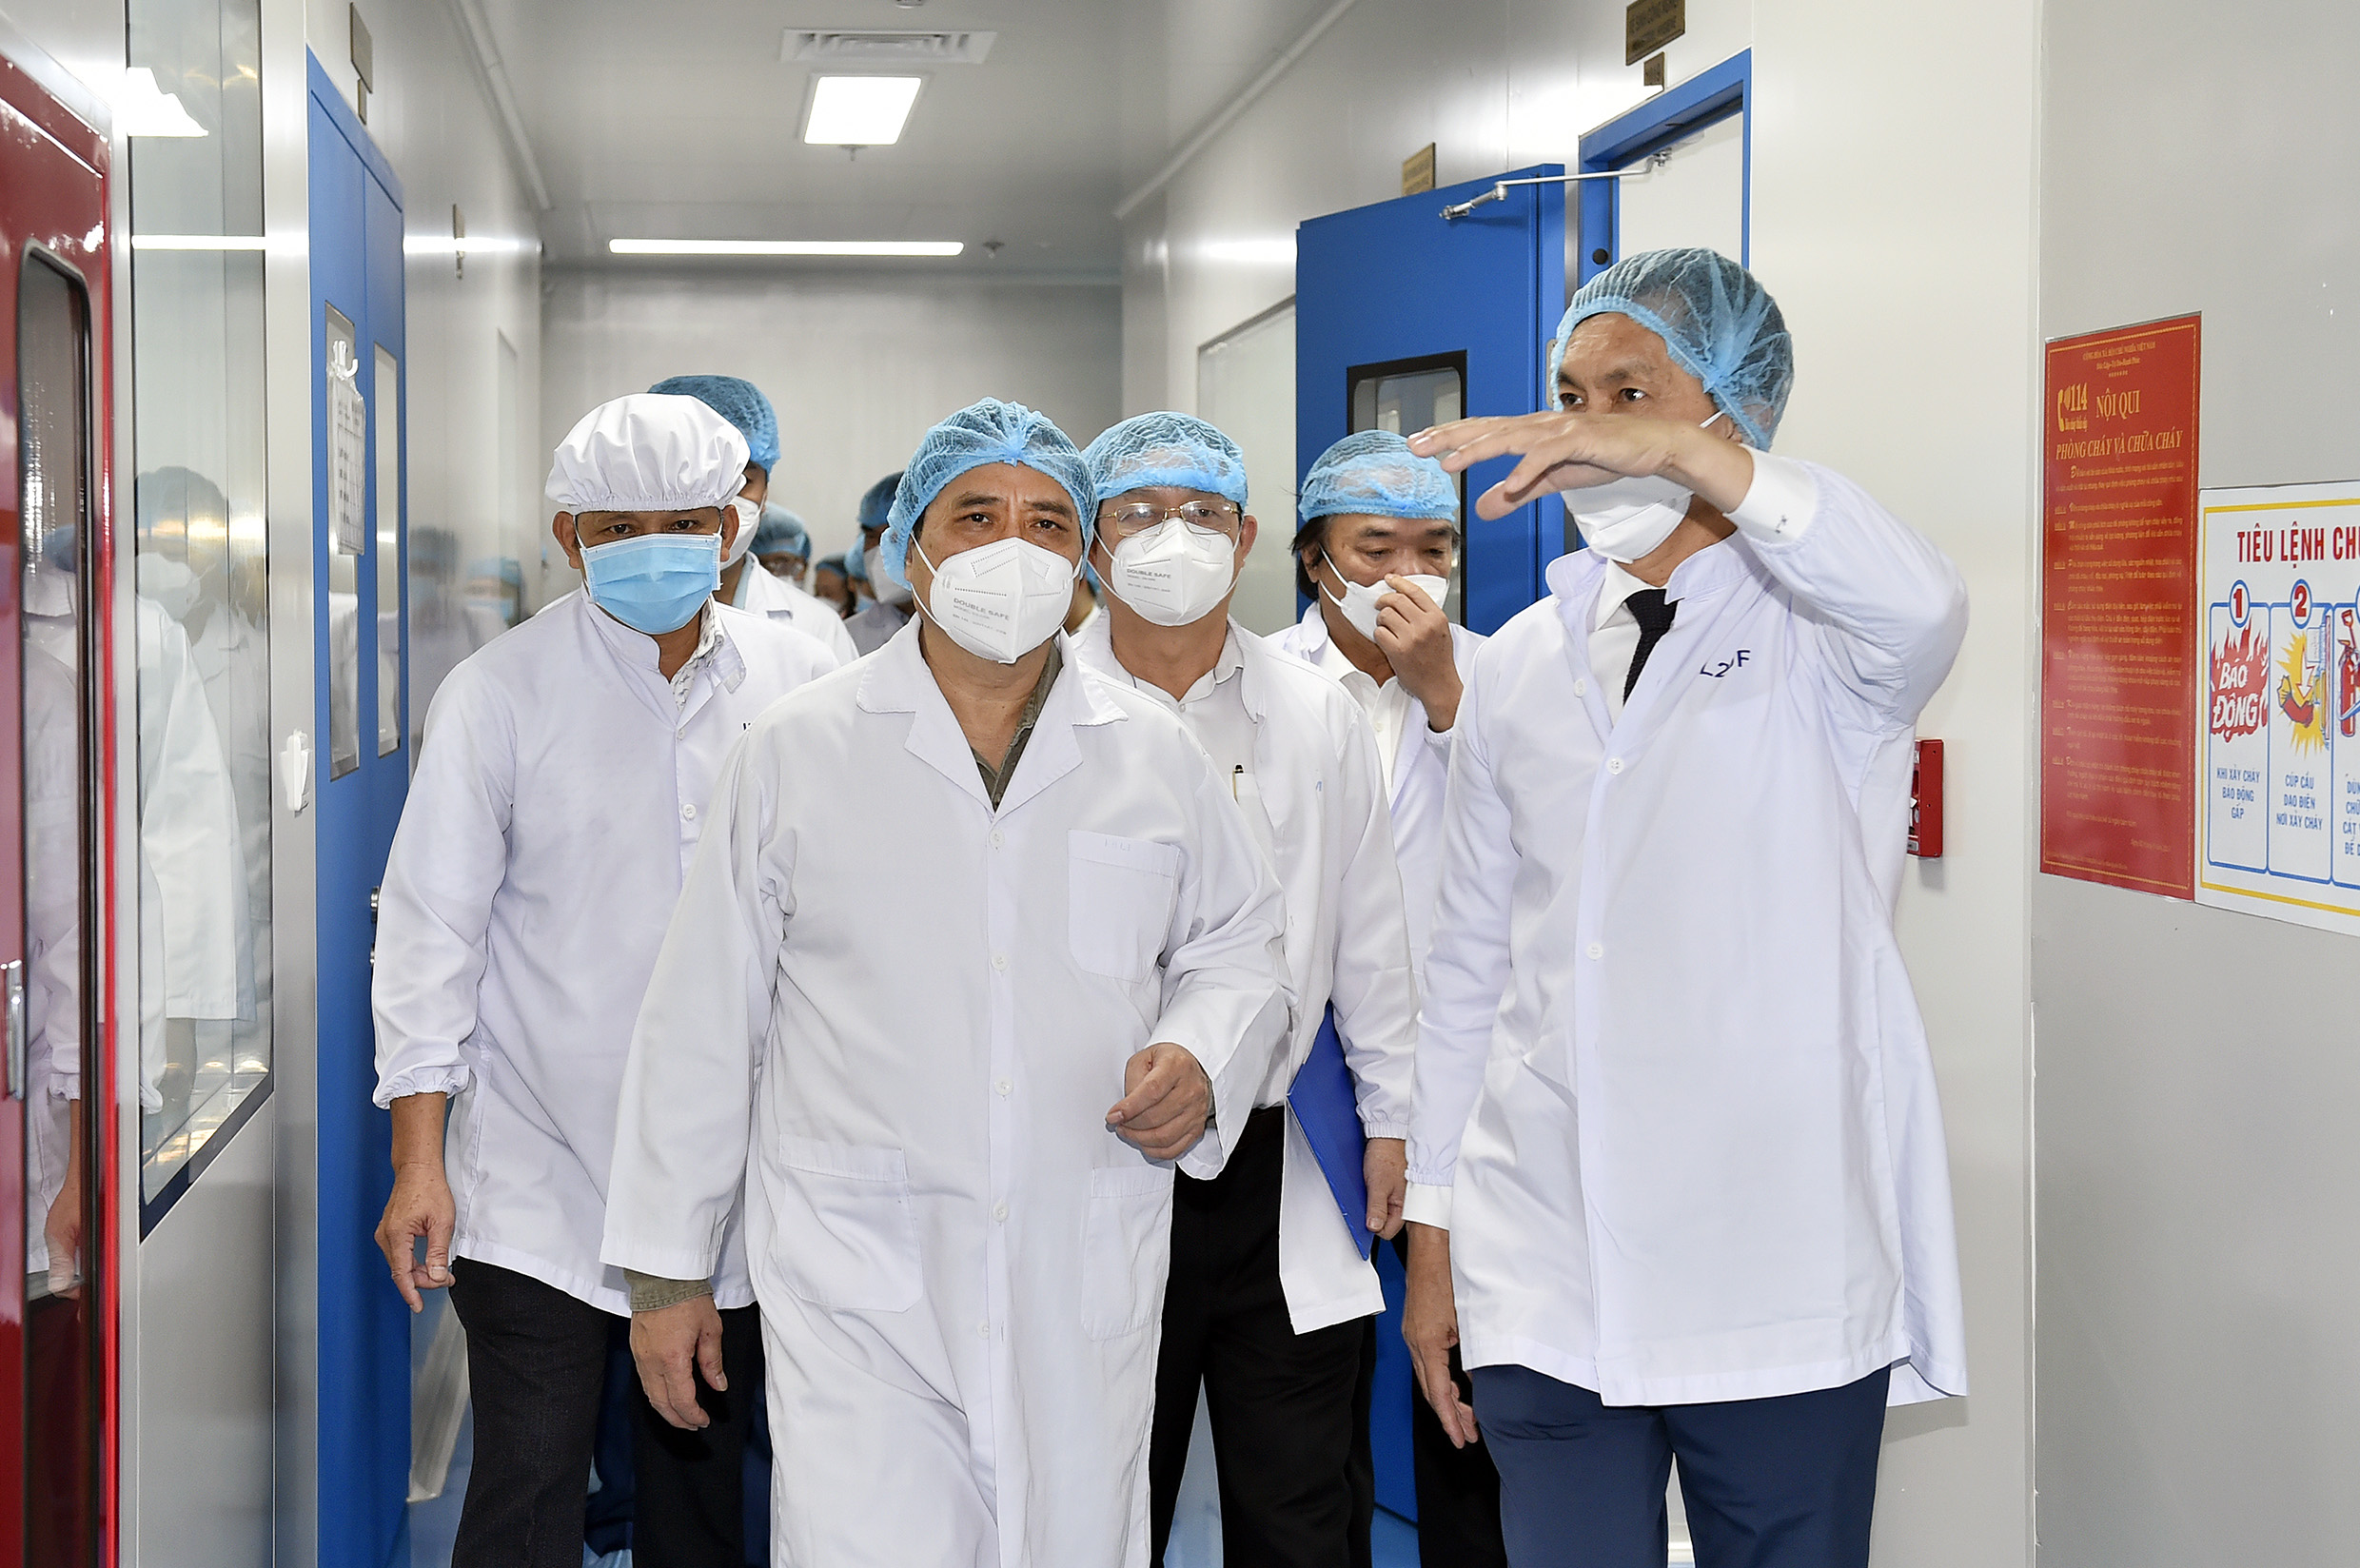 Thủ tướng Phạm Minh Chính: Lập tổ hành động để sản xuất bằng được vaccine phòng COVID-19 nhanh nhất - 1